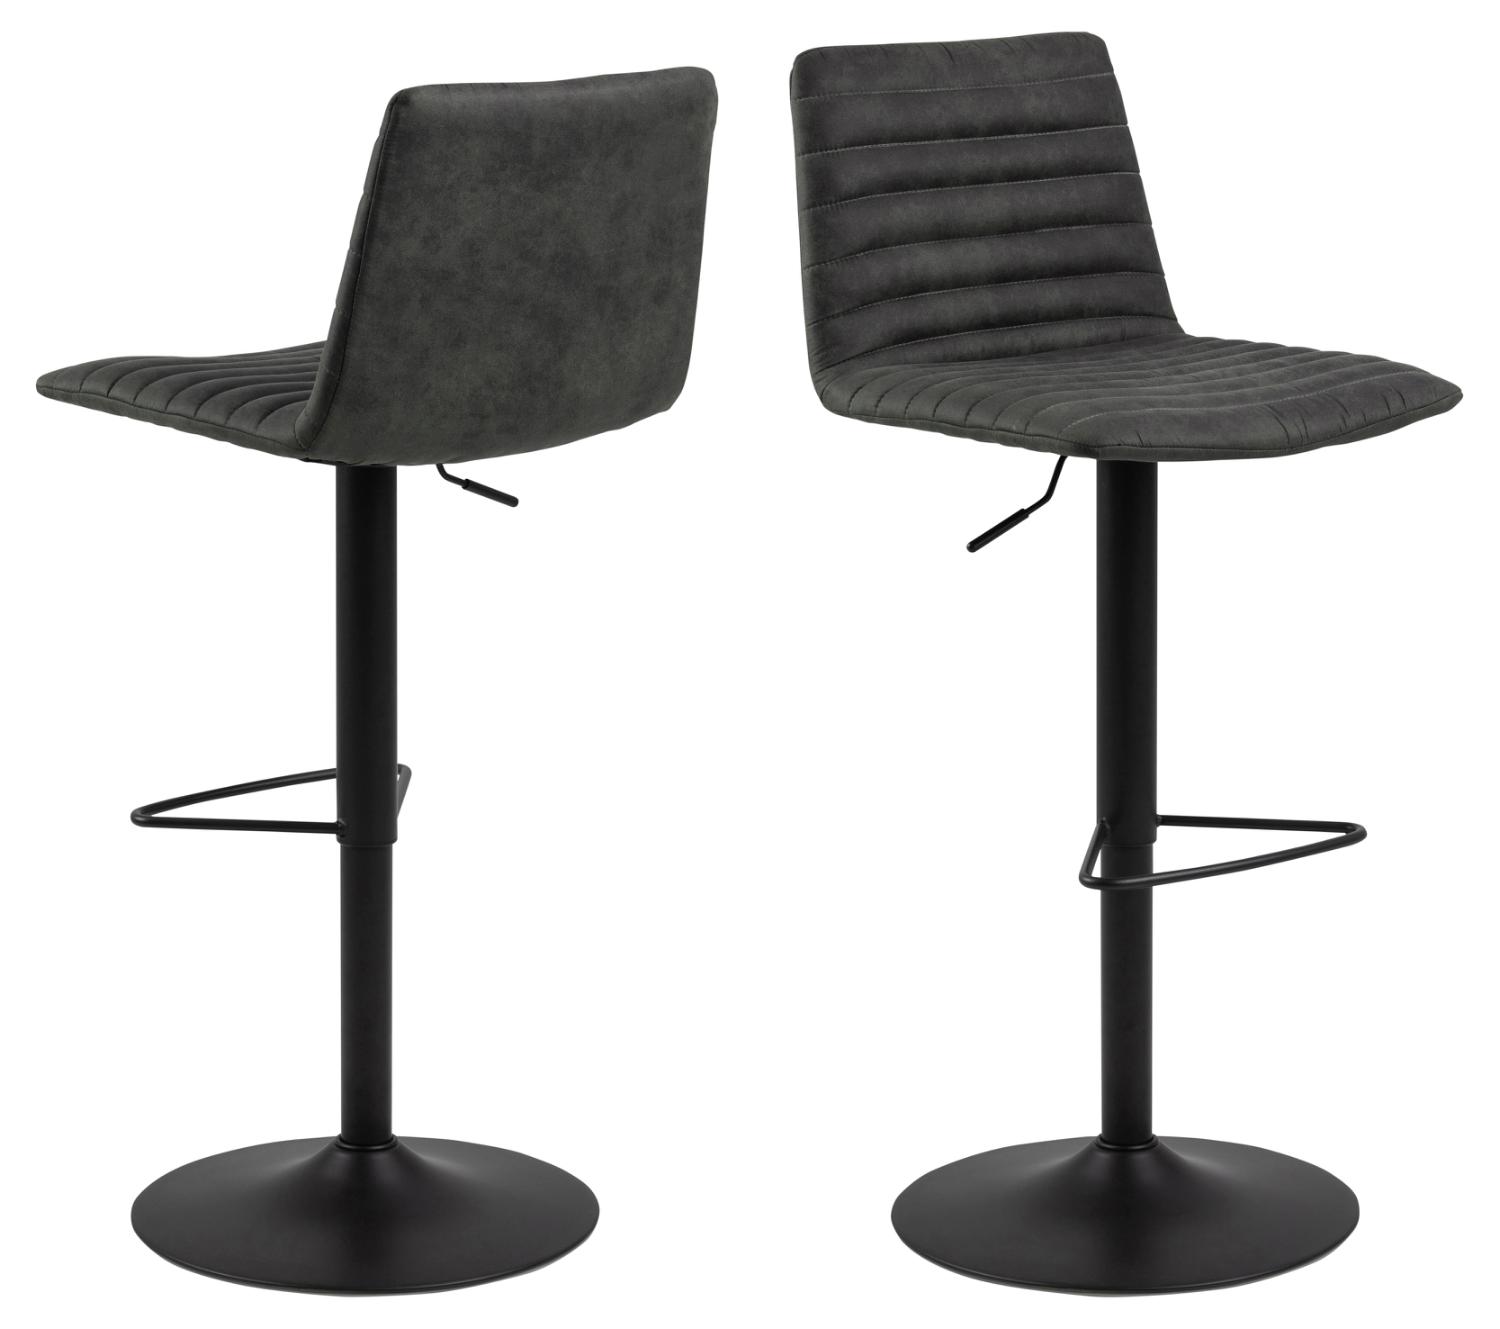 ACT NORDIC Kimmy barstol, m. ryglæn, fodstøtte, drejefunktion - antracitgrå stof og sort metal